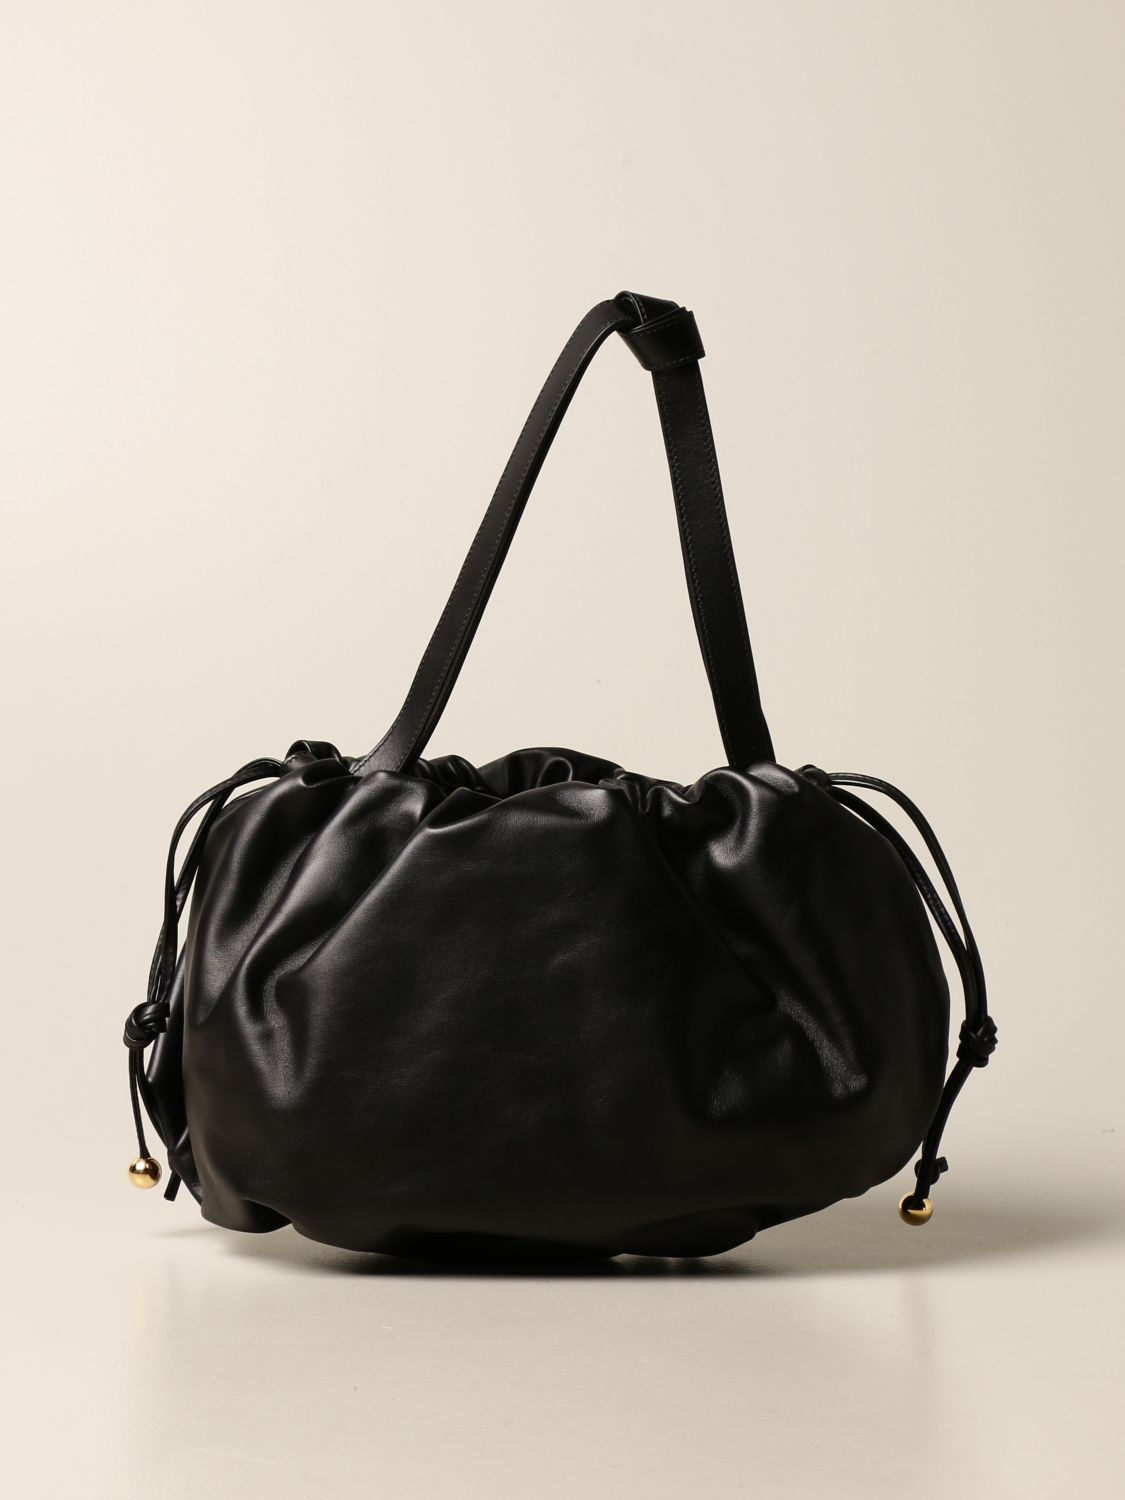 BOTTEGA VENETA: The Bulb bag in nappa leather - Black | Bottega Veneta